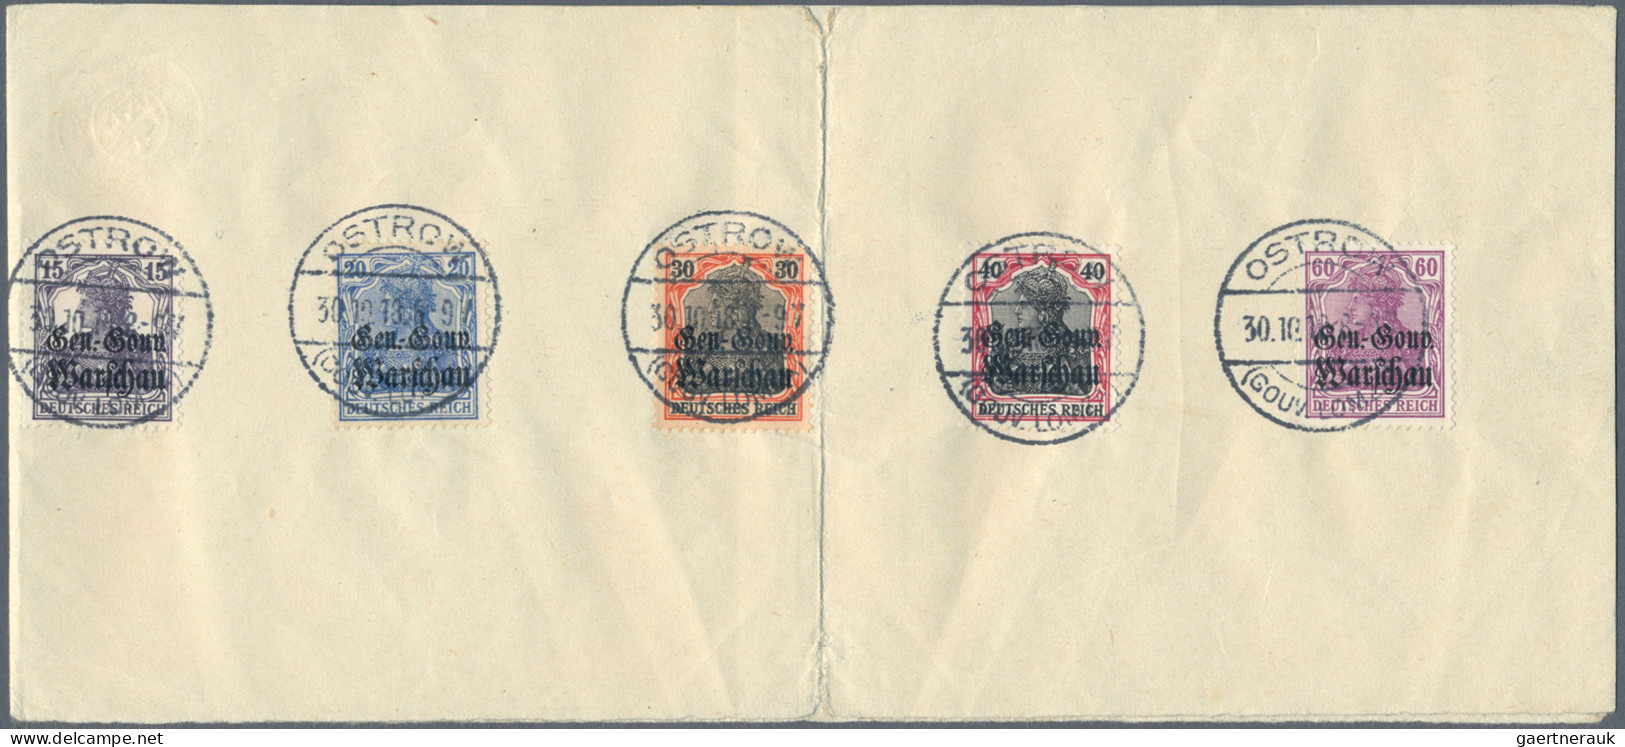 Deutsche Besetzung I. WK: Deutsche Post in Polen: 1914-1918, Spezialsammlung in